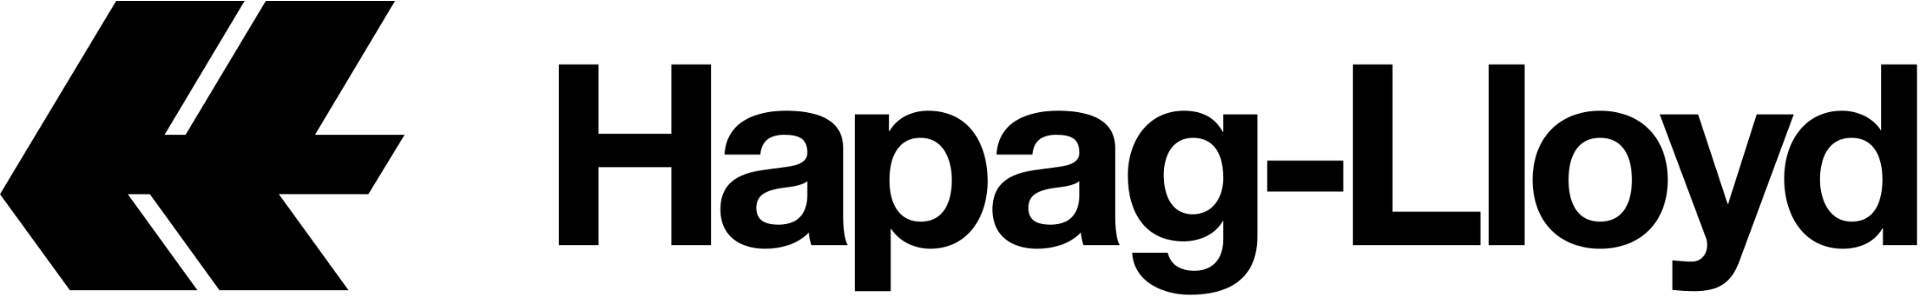 black logo hapag lloyd